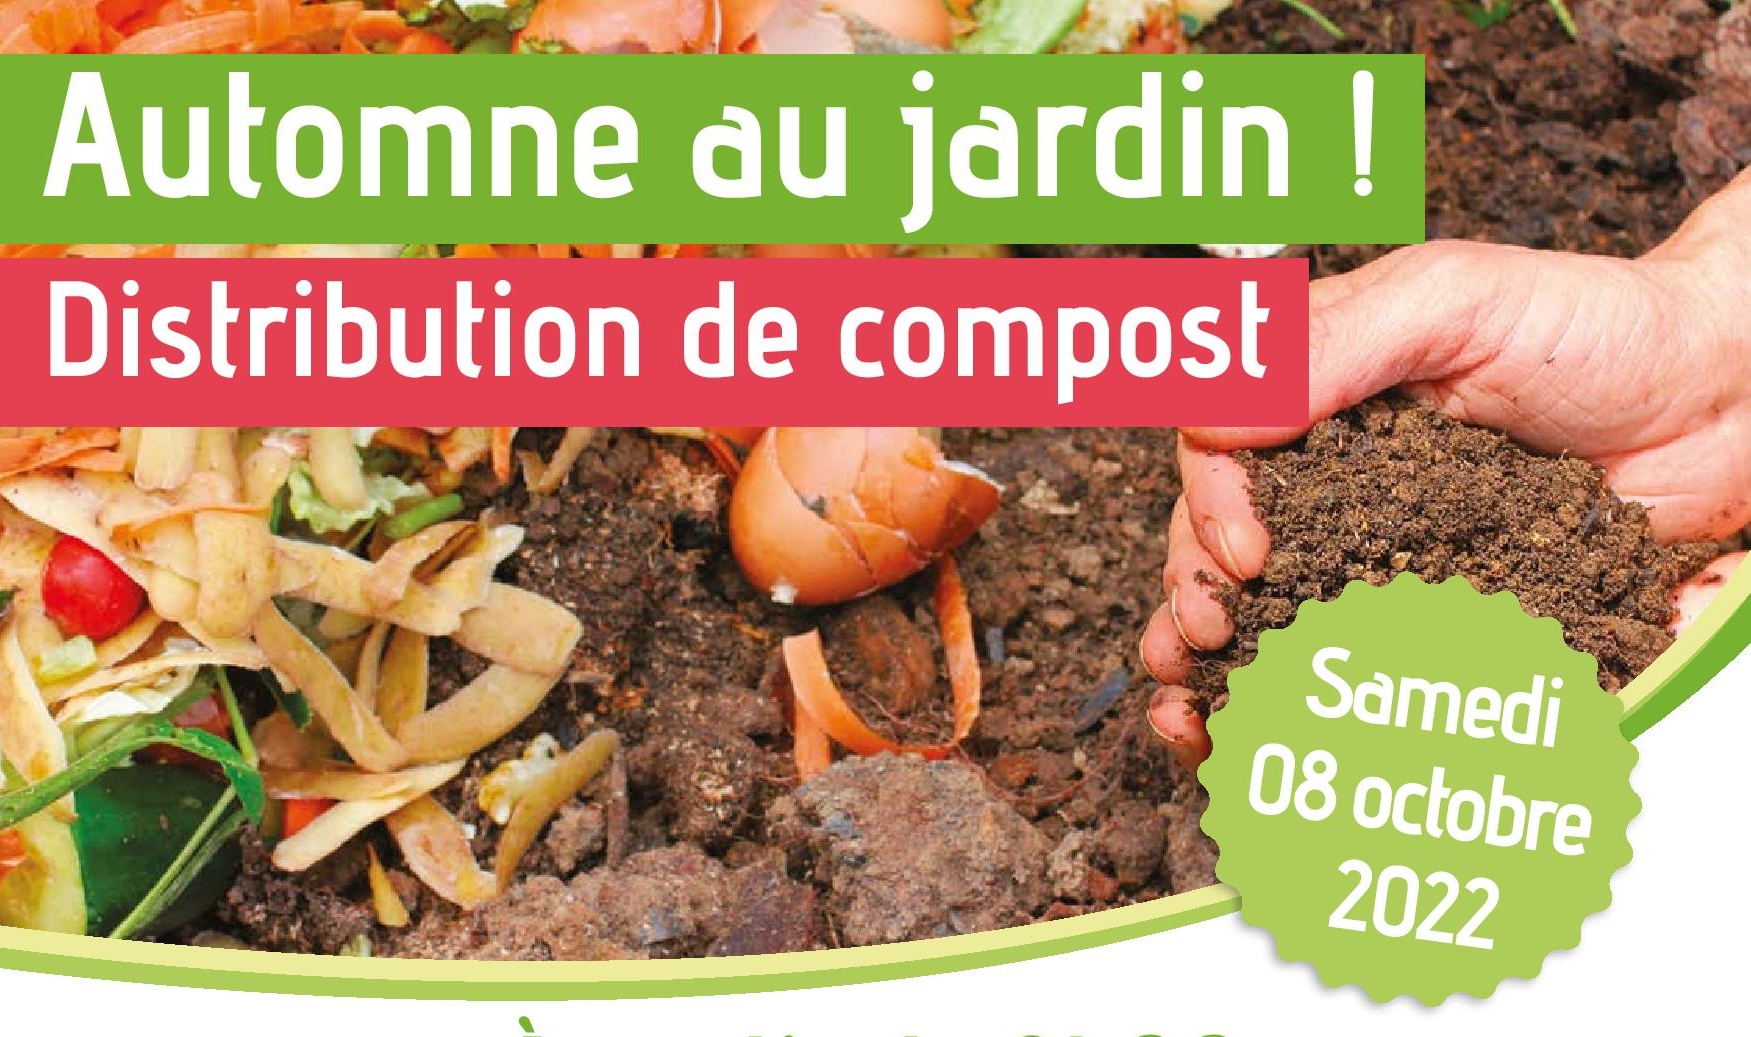 You are currently viewing Distribution de compost avec la CCMM (8 octobre 2022)